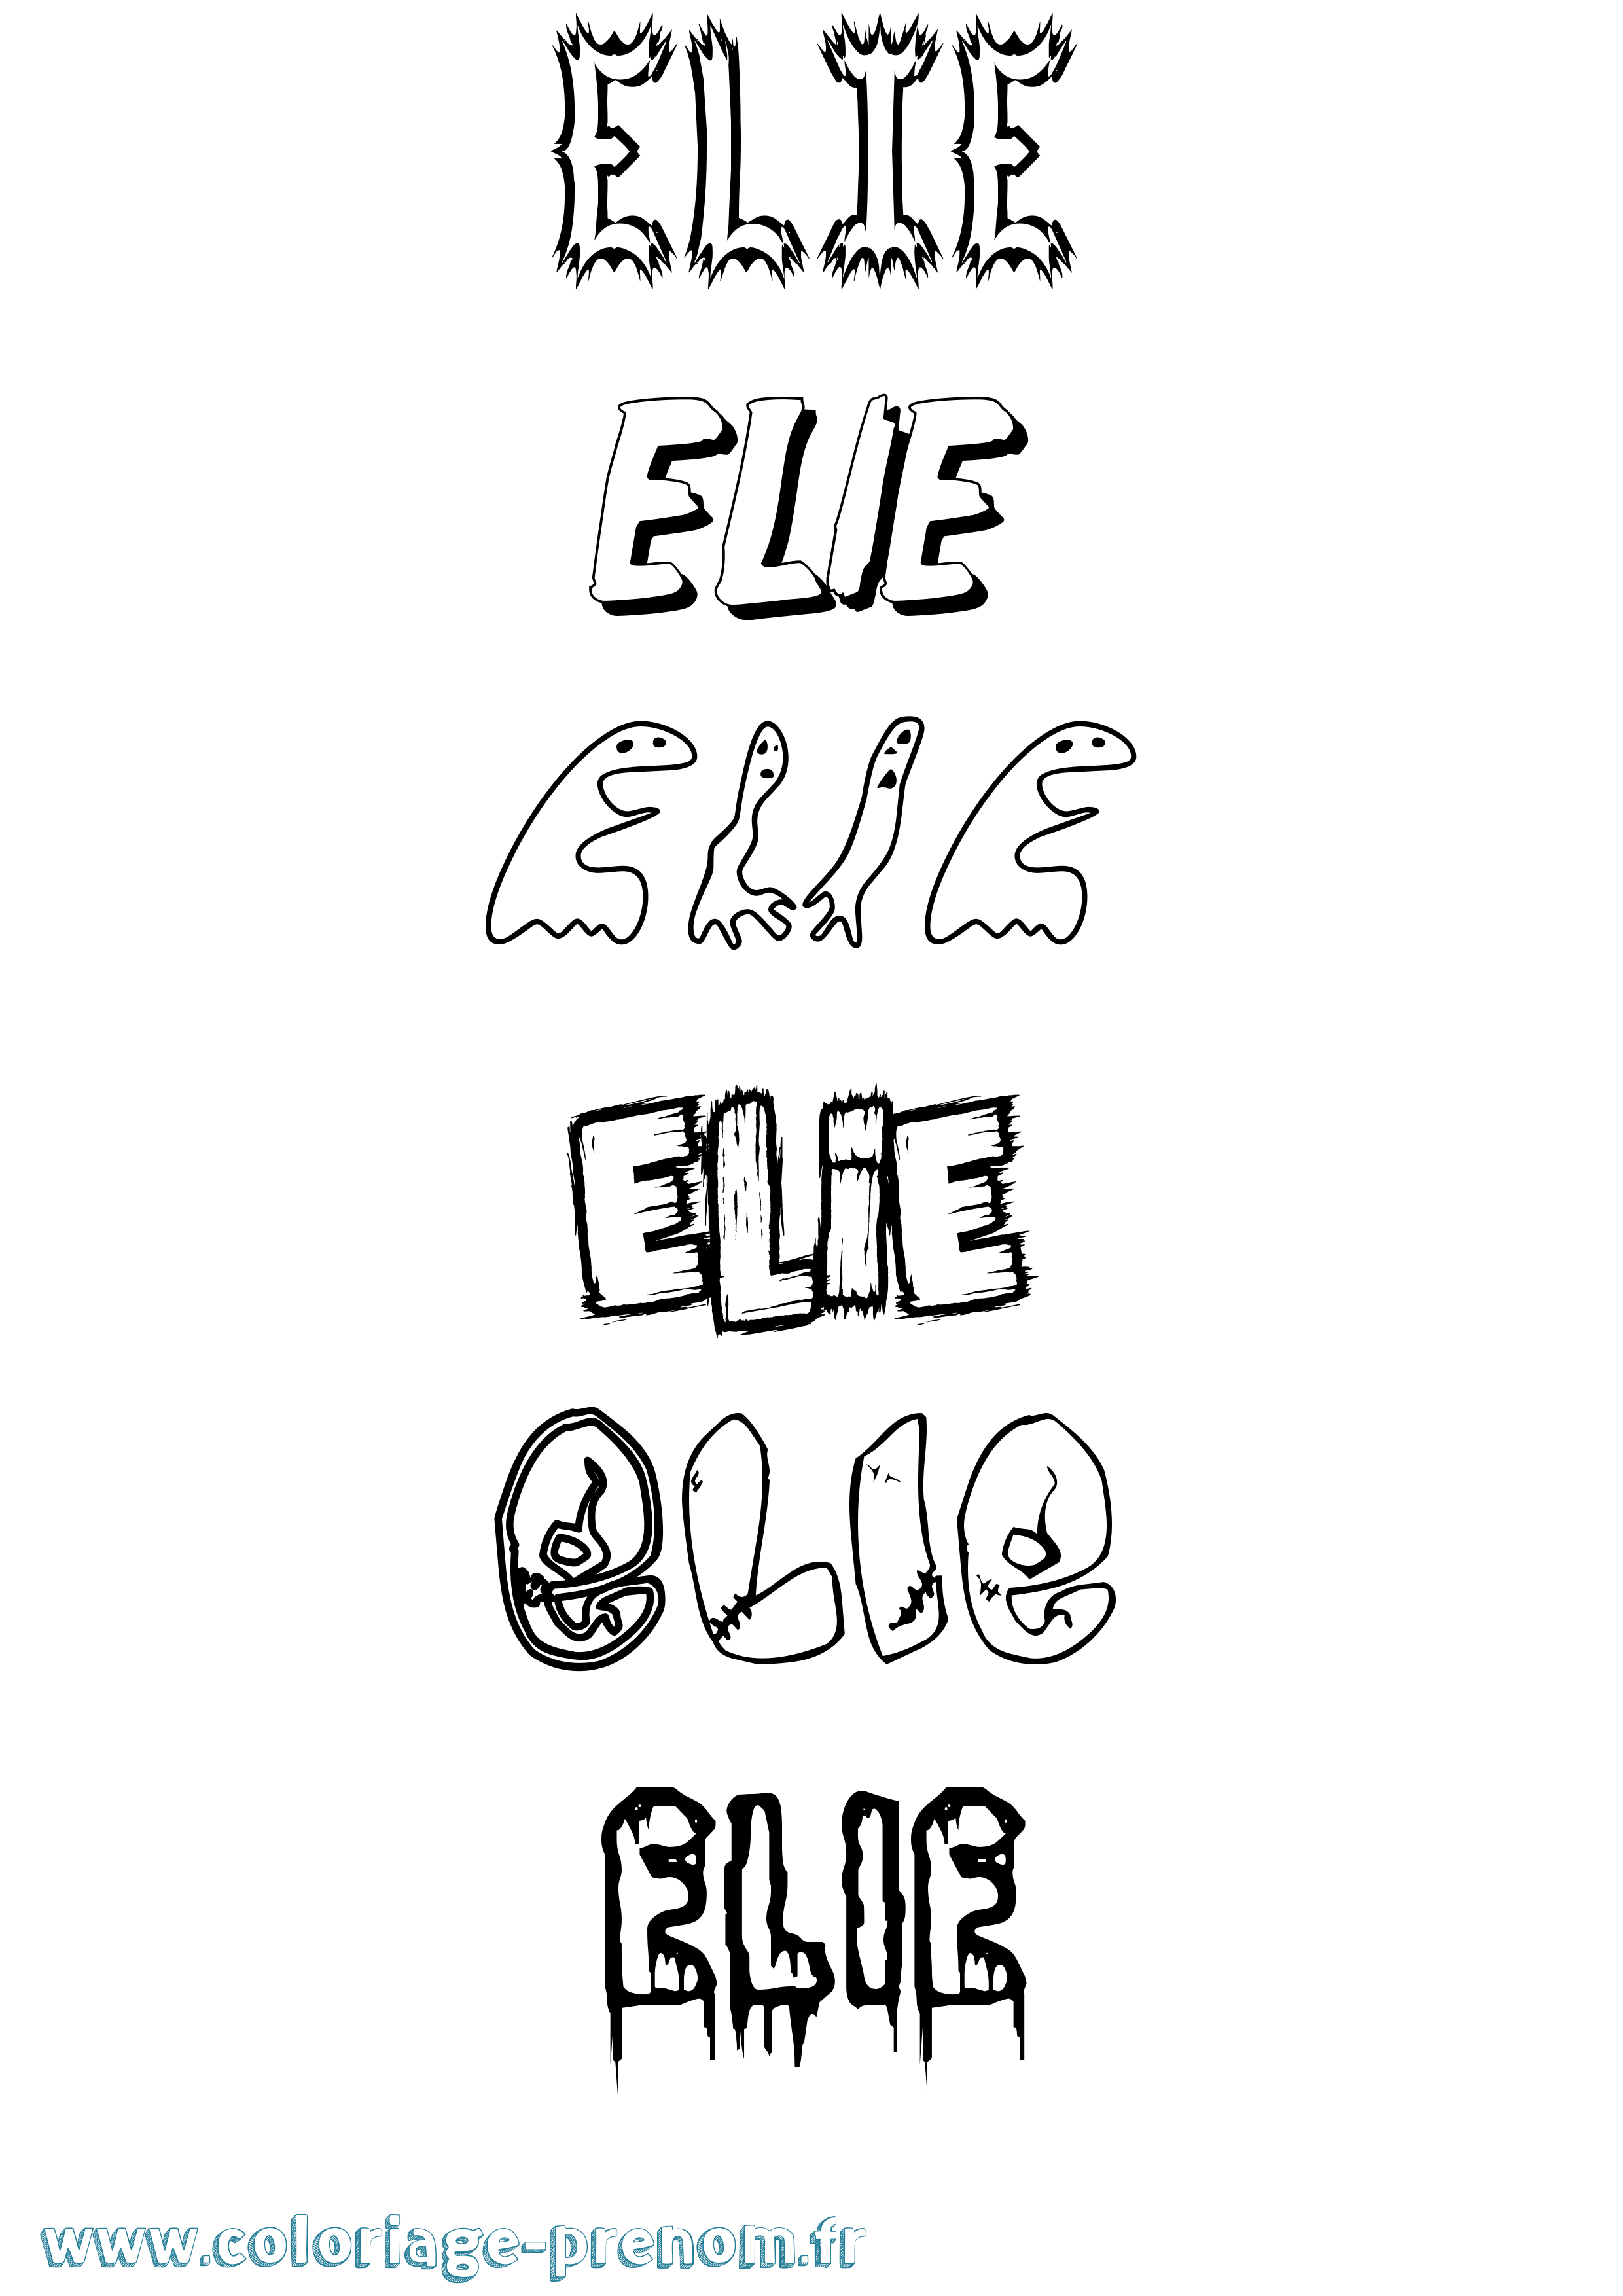 Coloriage prénom Elie Frisson